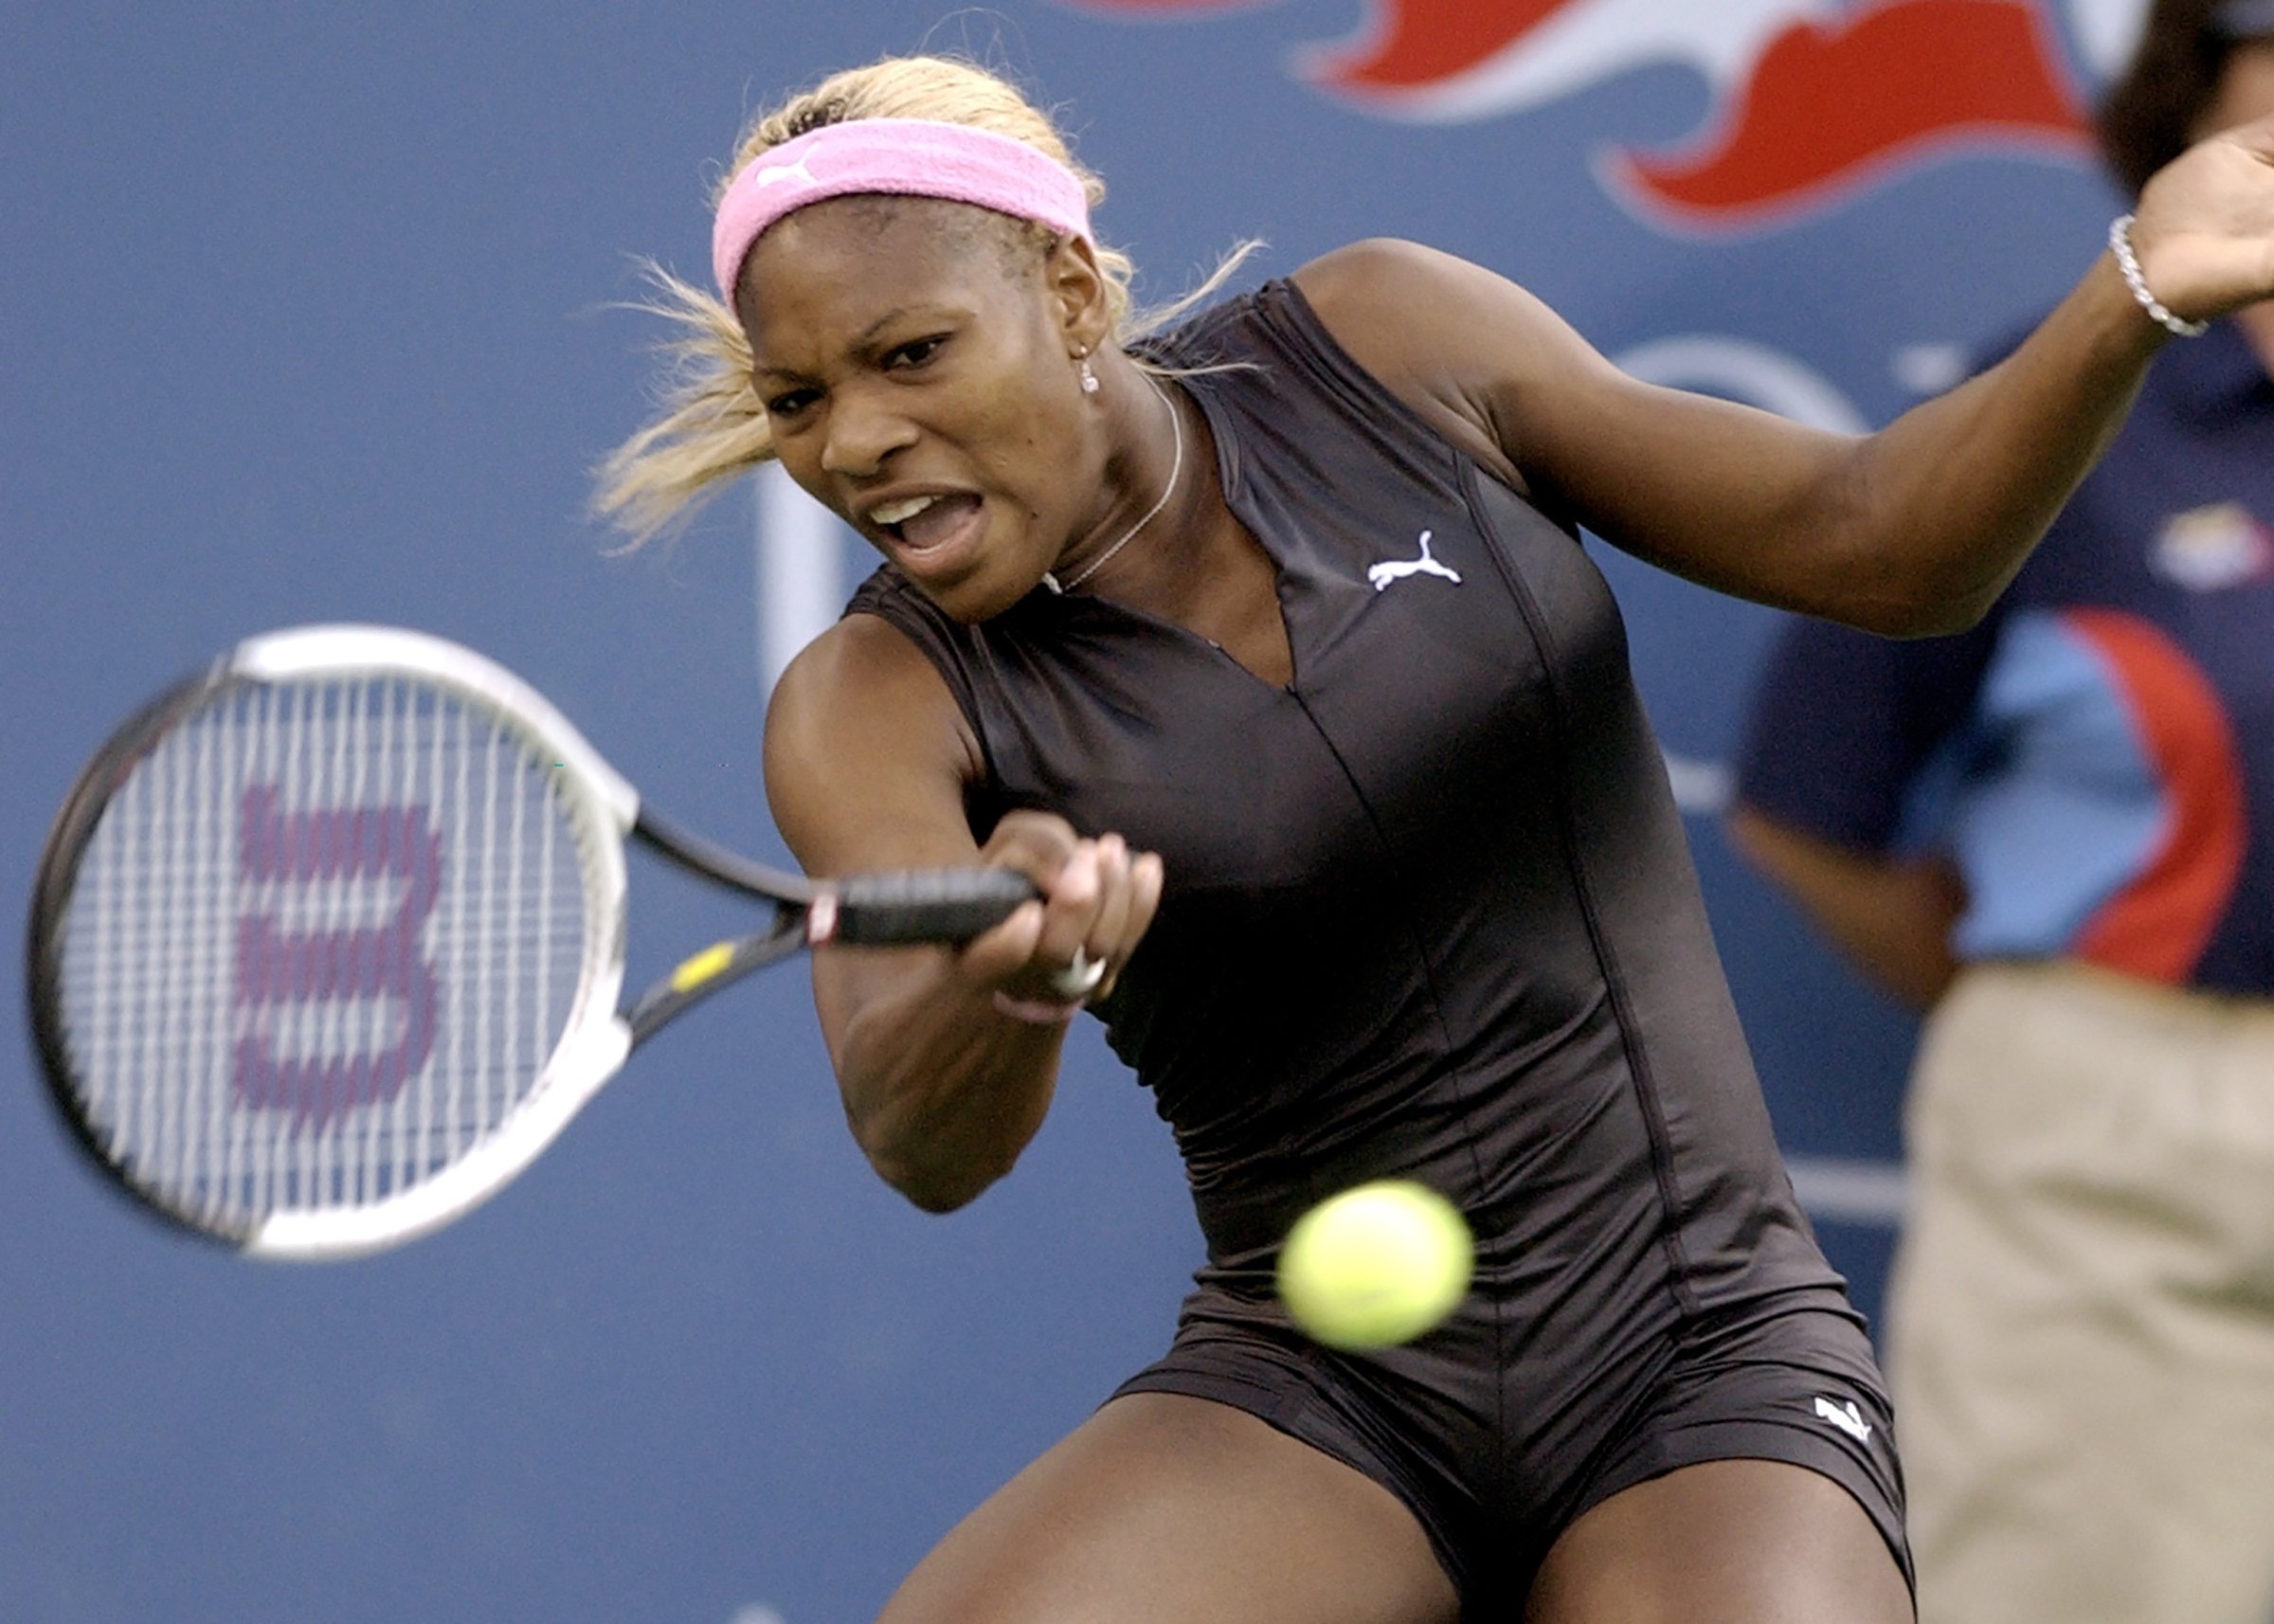 ‘Terlalu banyak berpikir tentang Slam ke-24 tidak membantu,’ kata Serena Williams